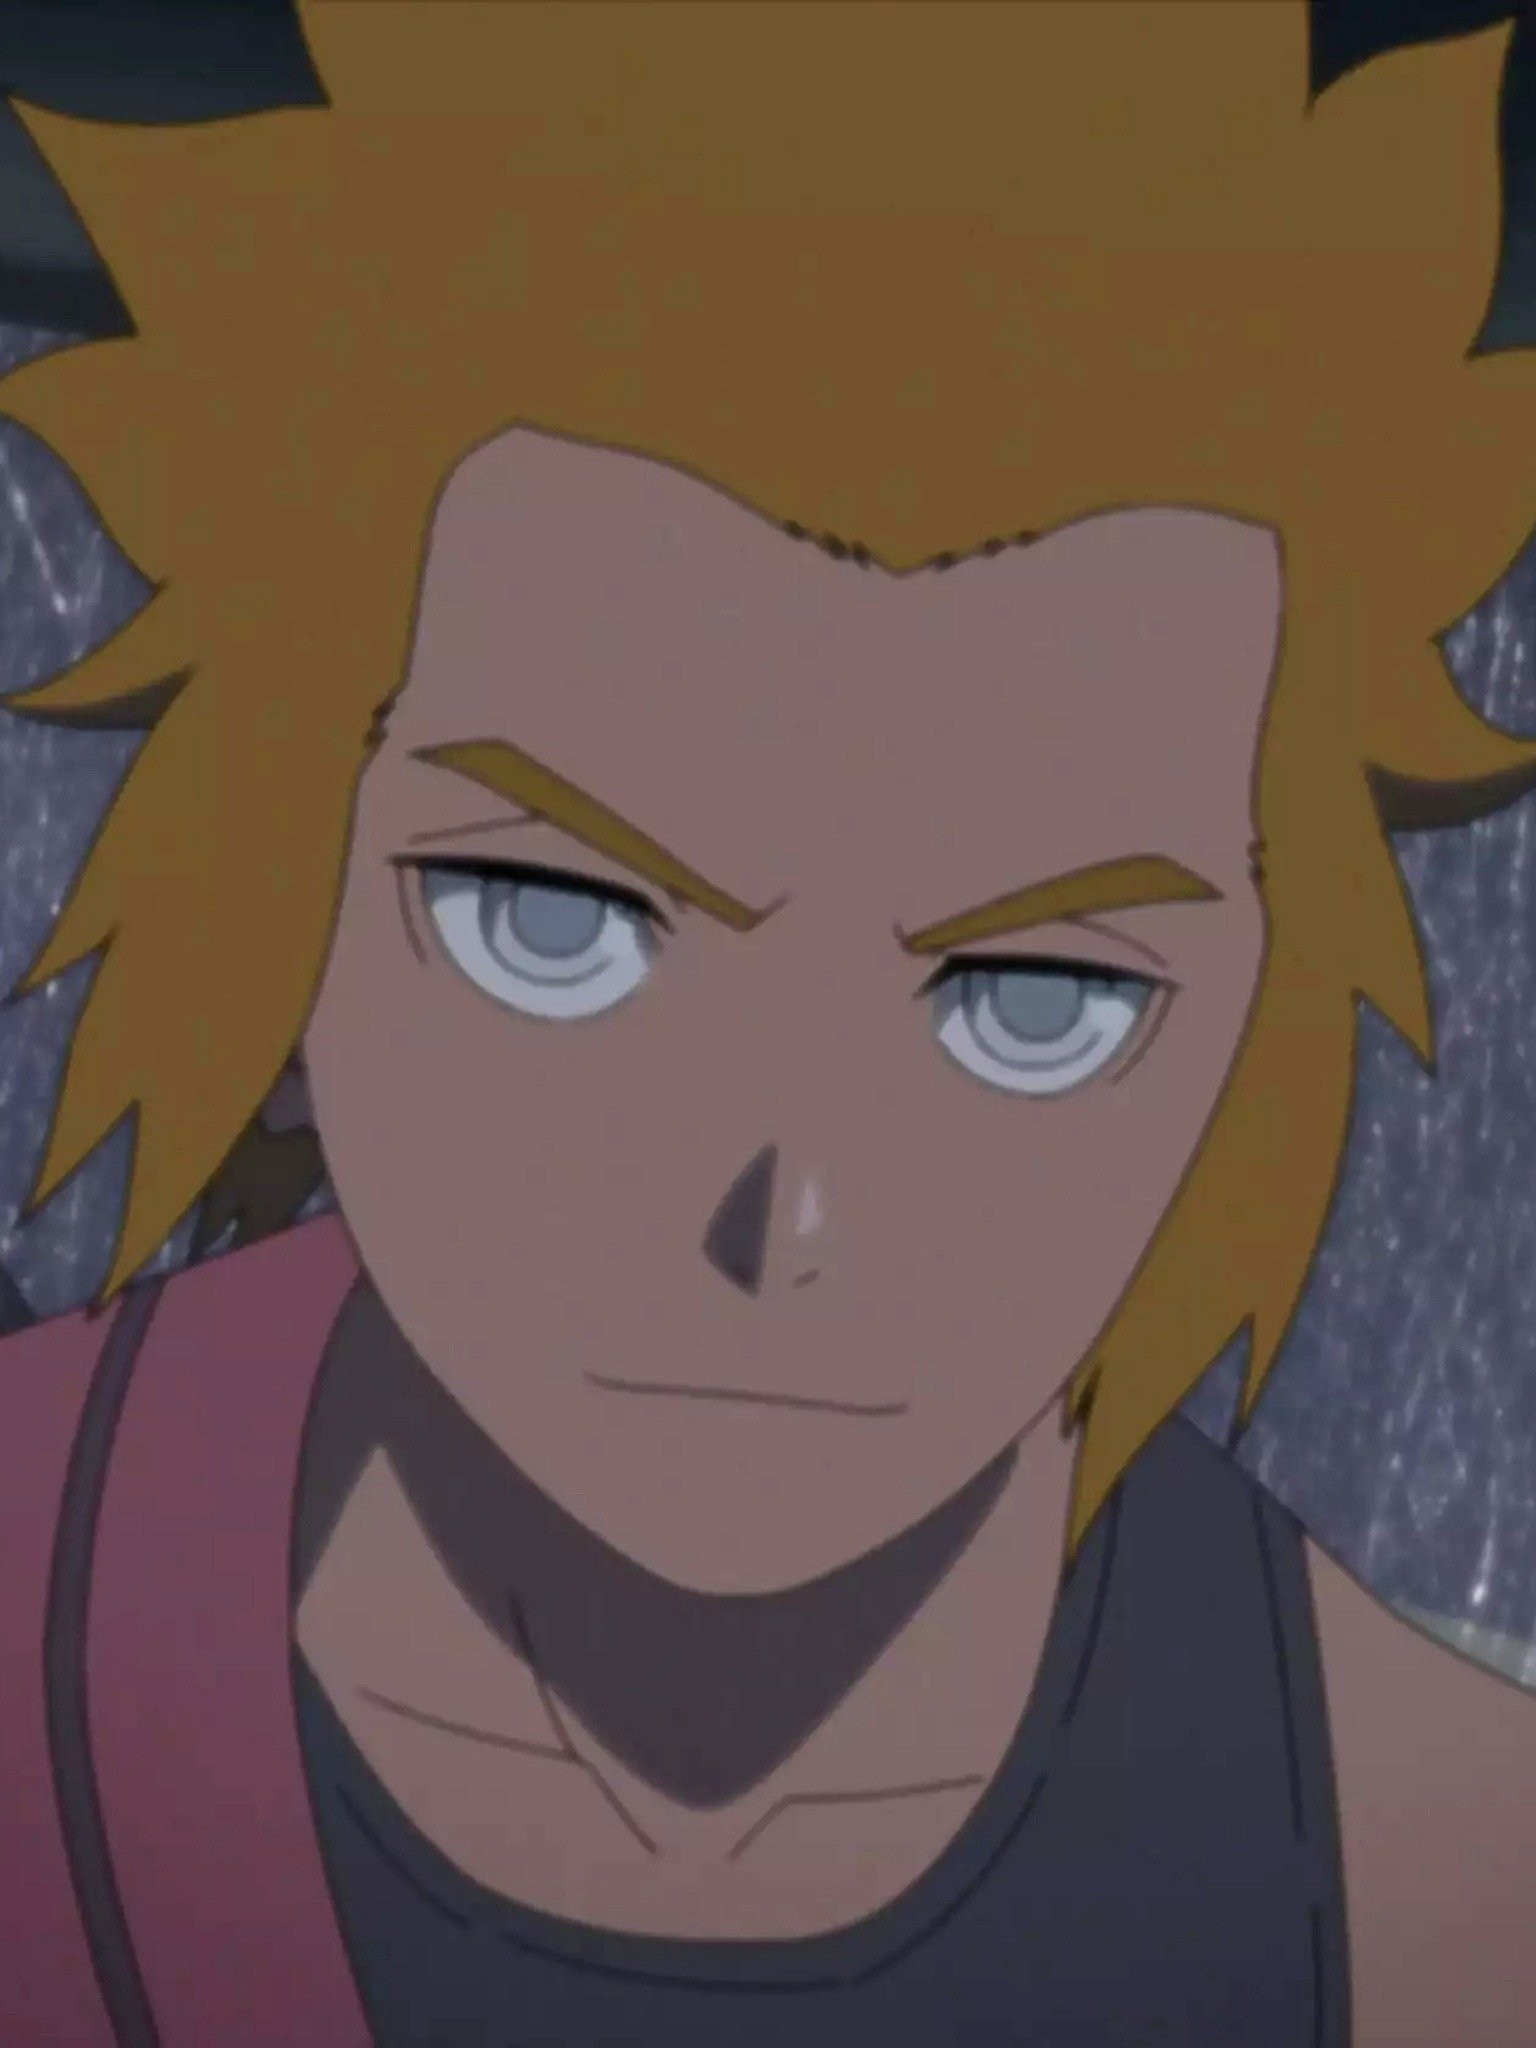 To Rescue Naruto - Boruto Episode 205 Reaction